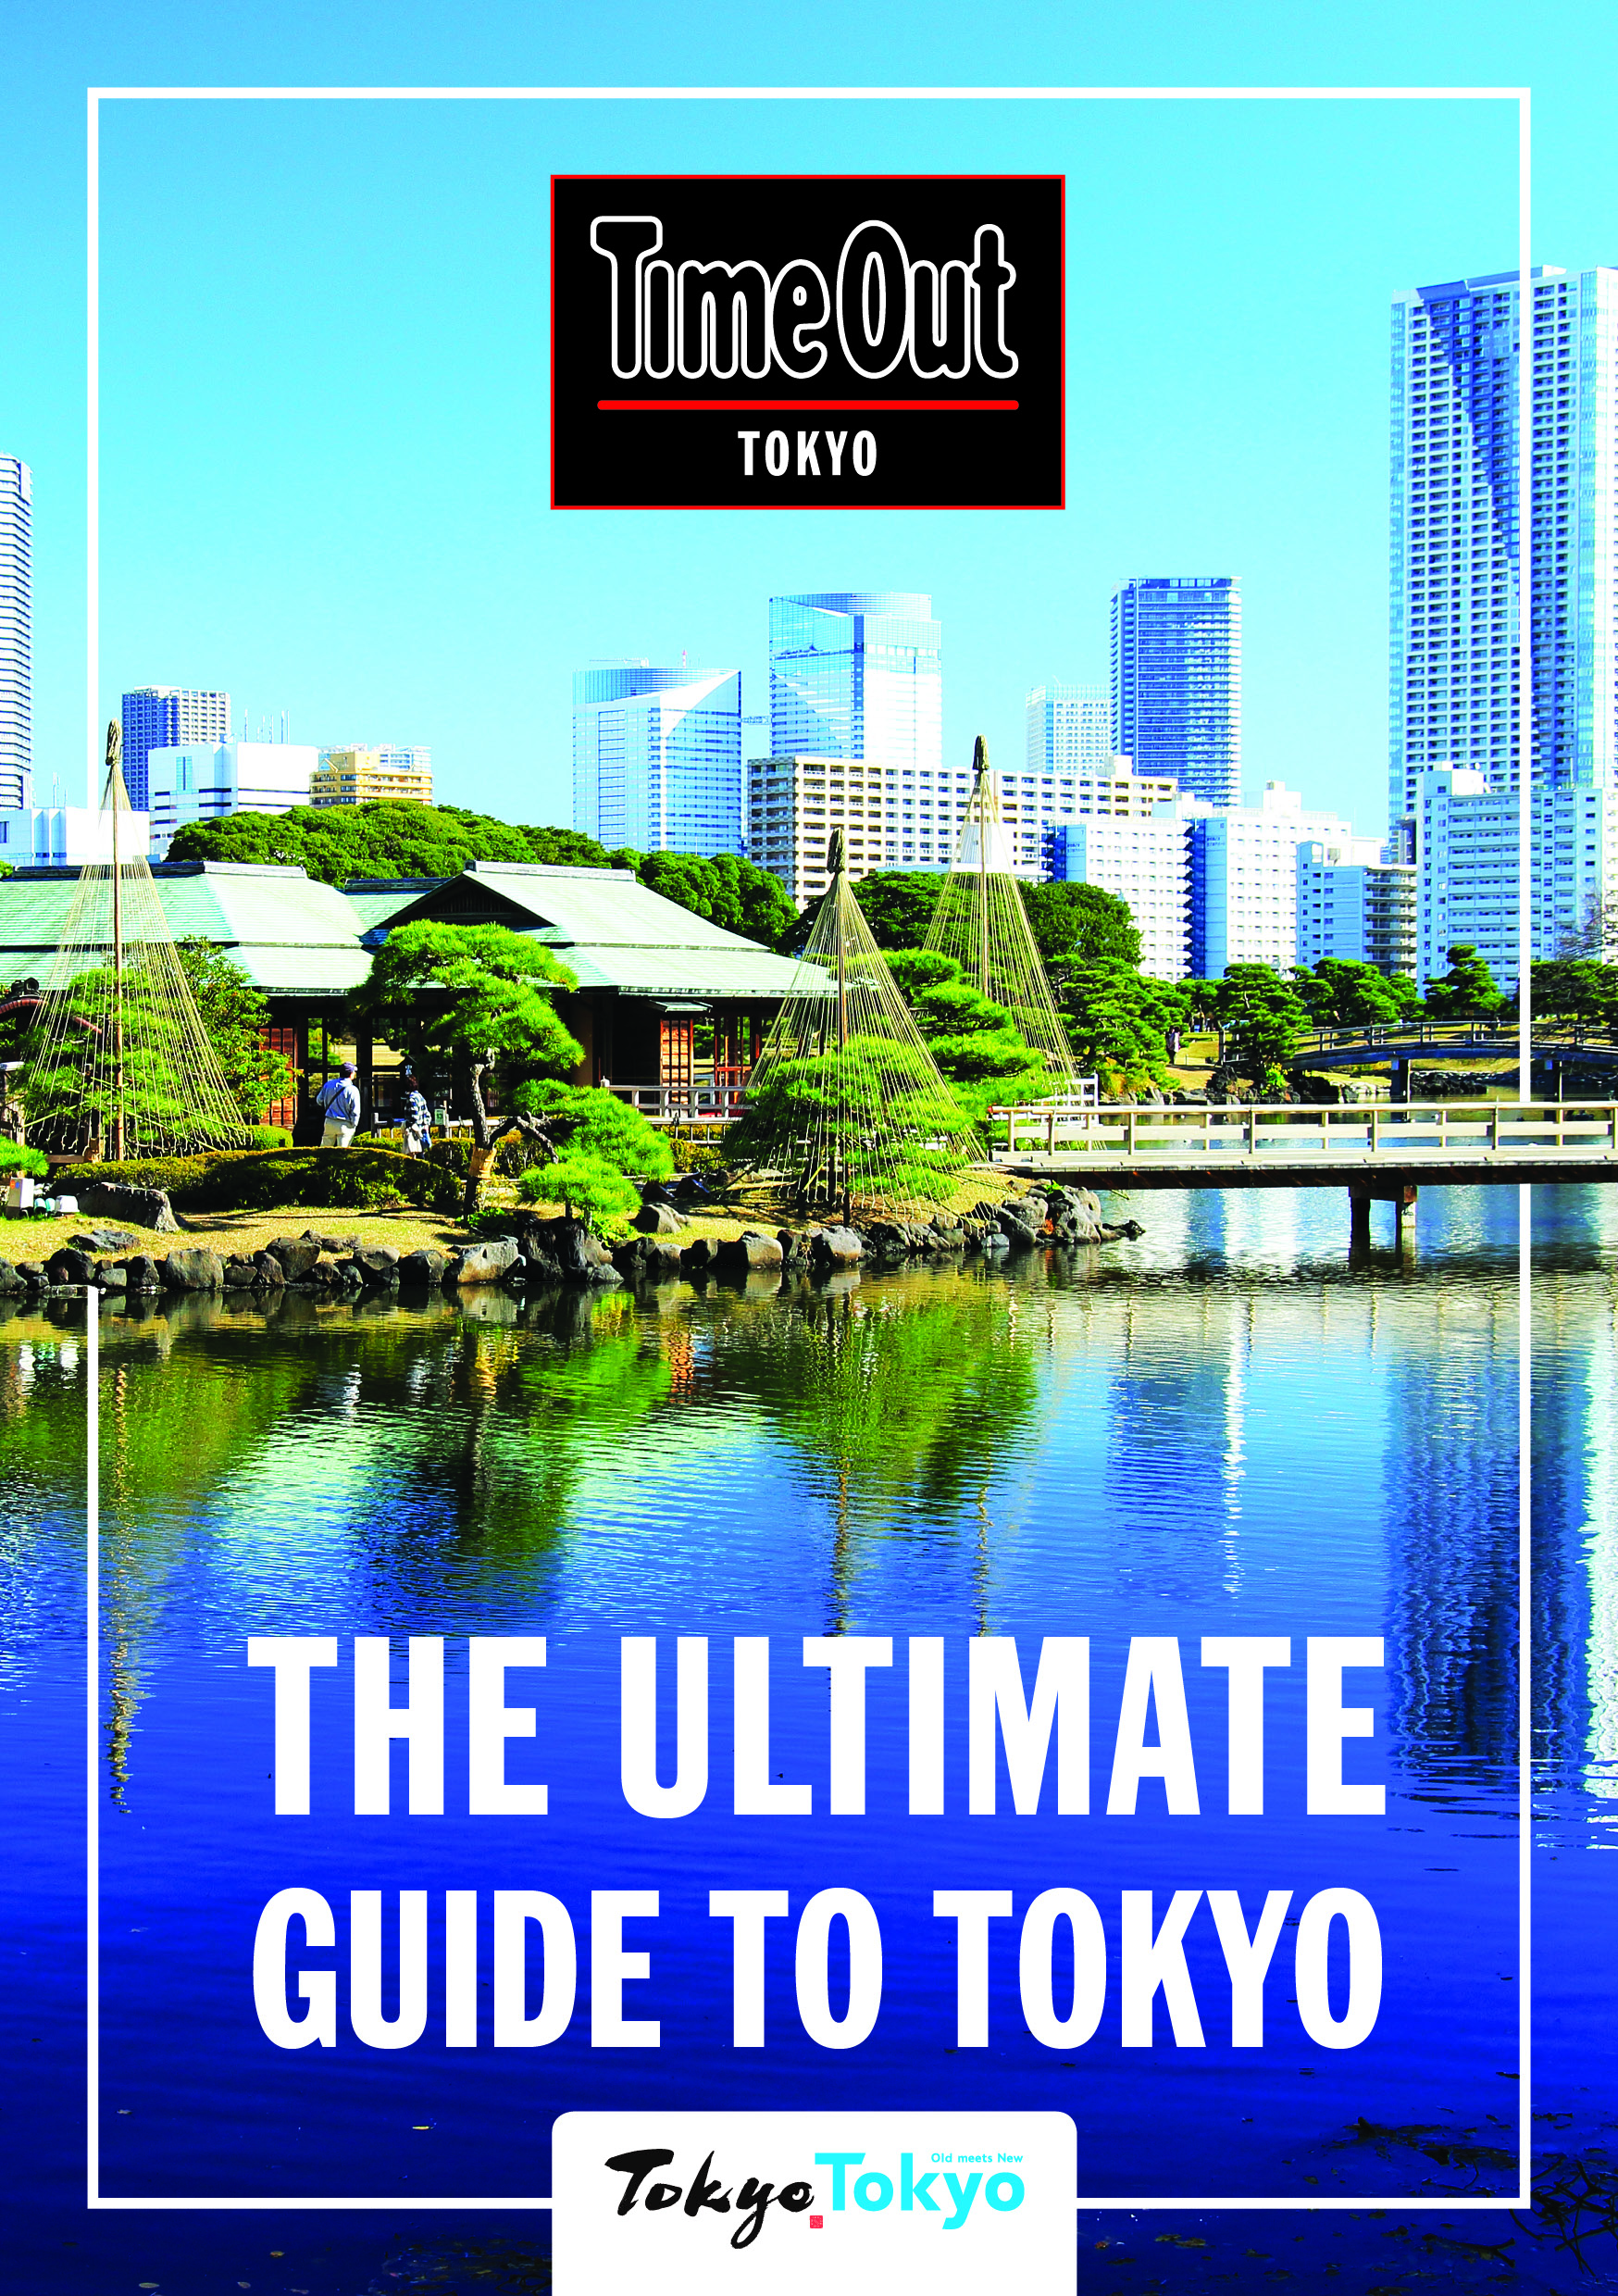 タイムアウト東京はの英語版リーフレット『The Ultimate Guide to Tokyo』